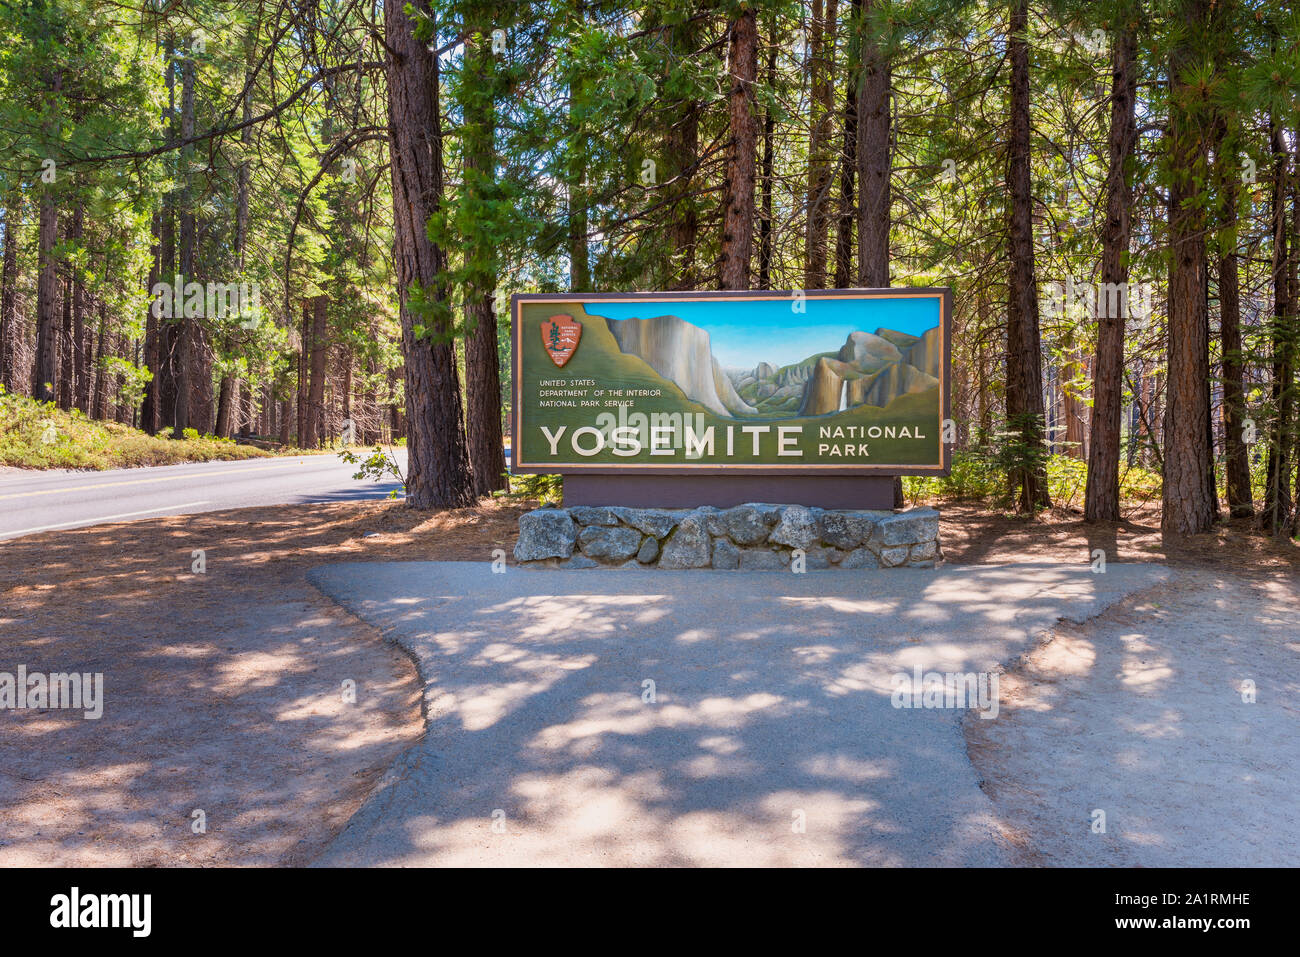 Eingangsschild zum Yosemite National Park, Kalifornien, USA. Der Park ist in der westlichen Sierra Nevada gelegen und hat etwa 4 Millionen Besucher jährlich. Stockfoto